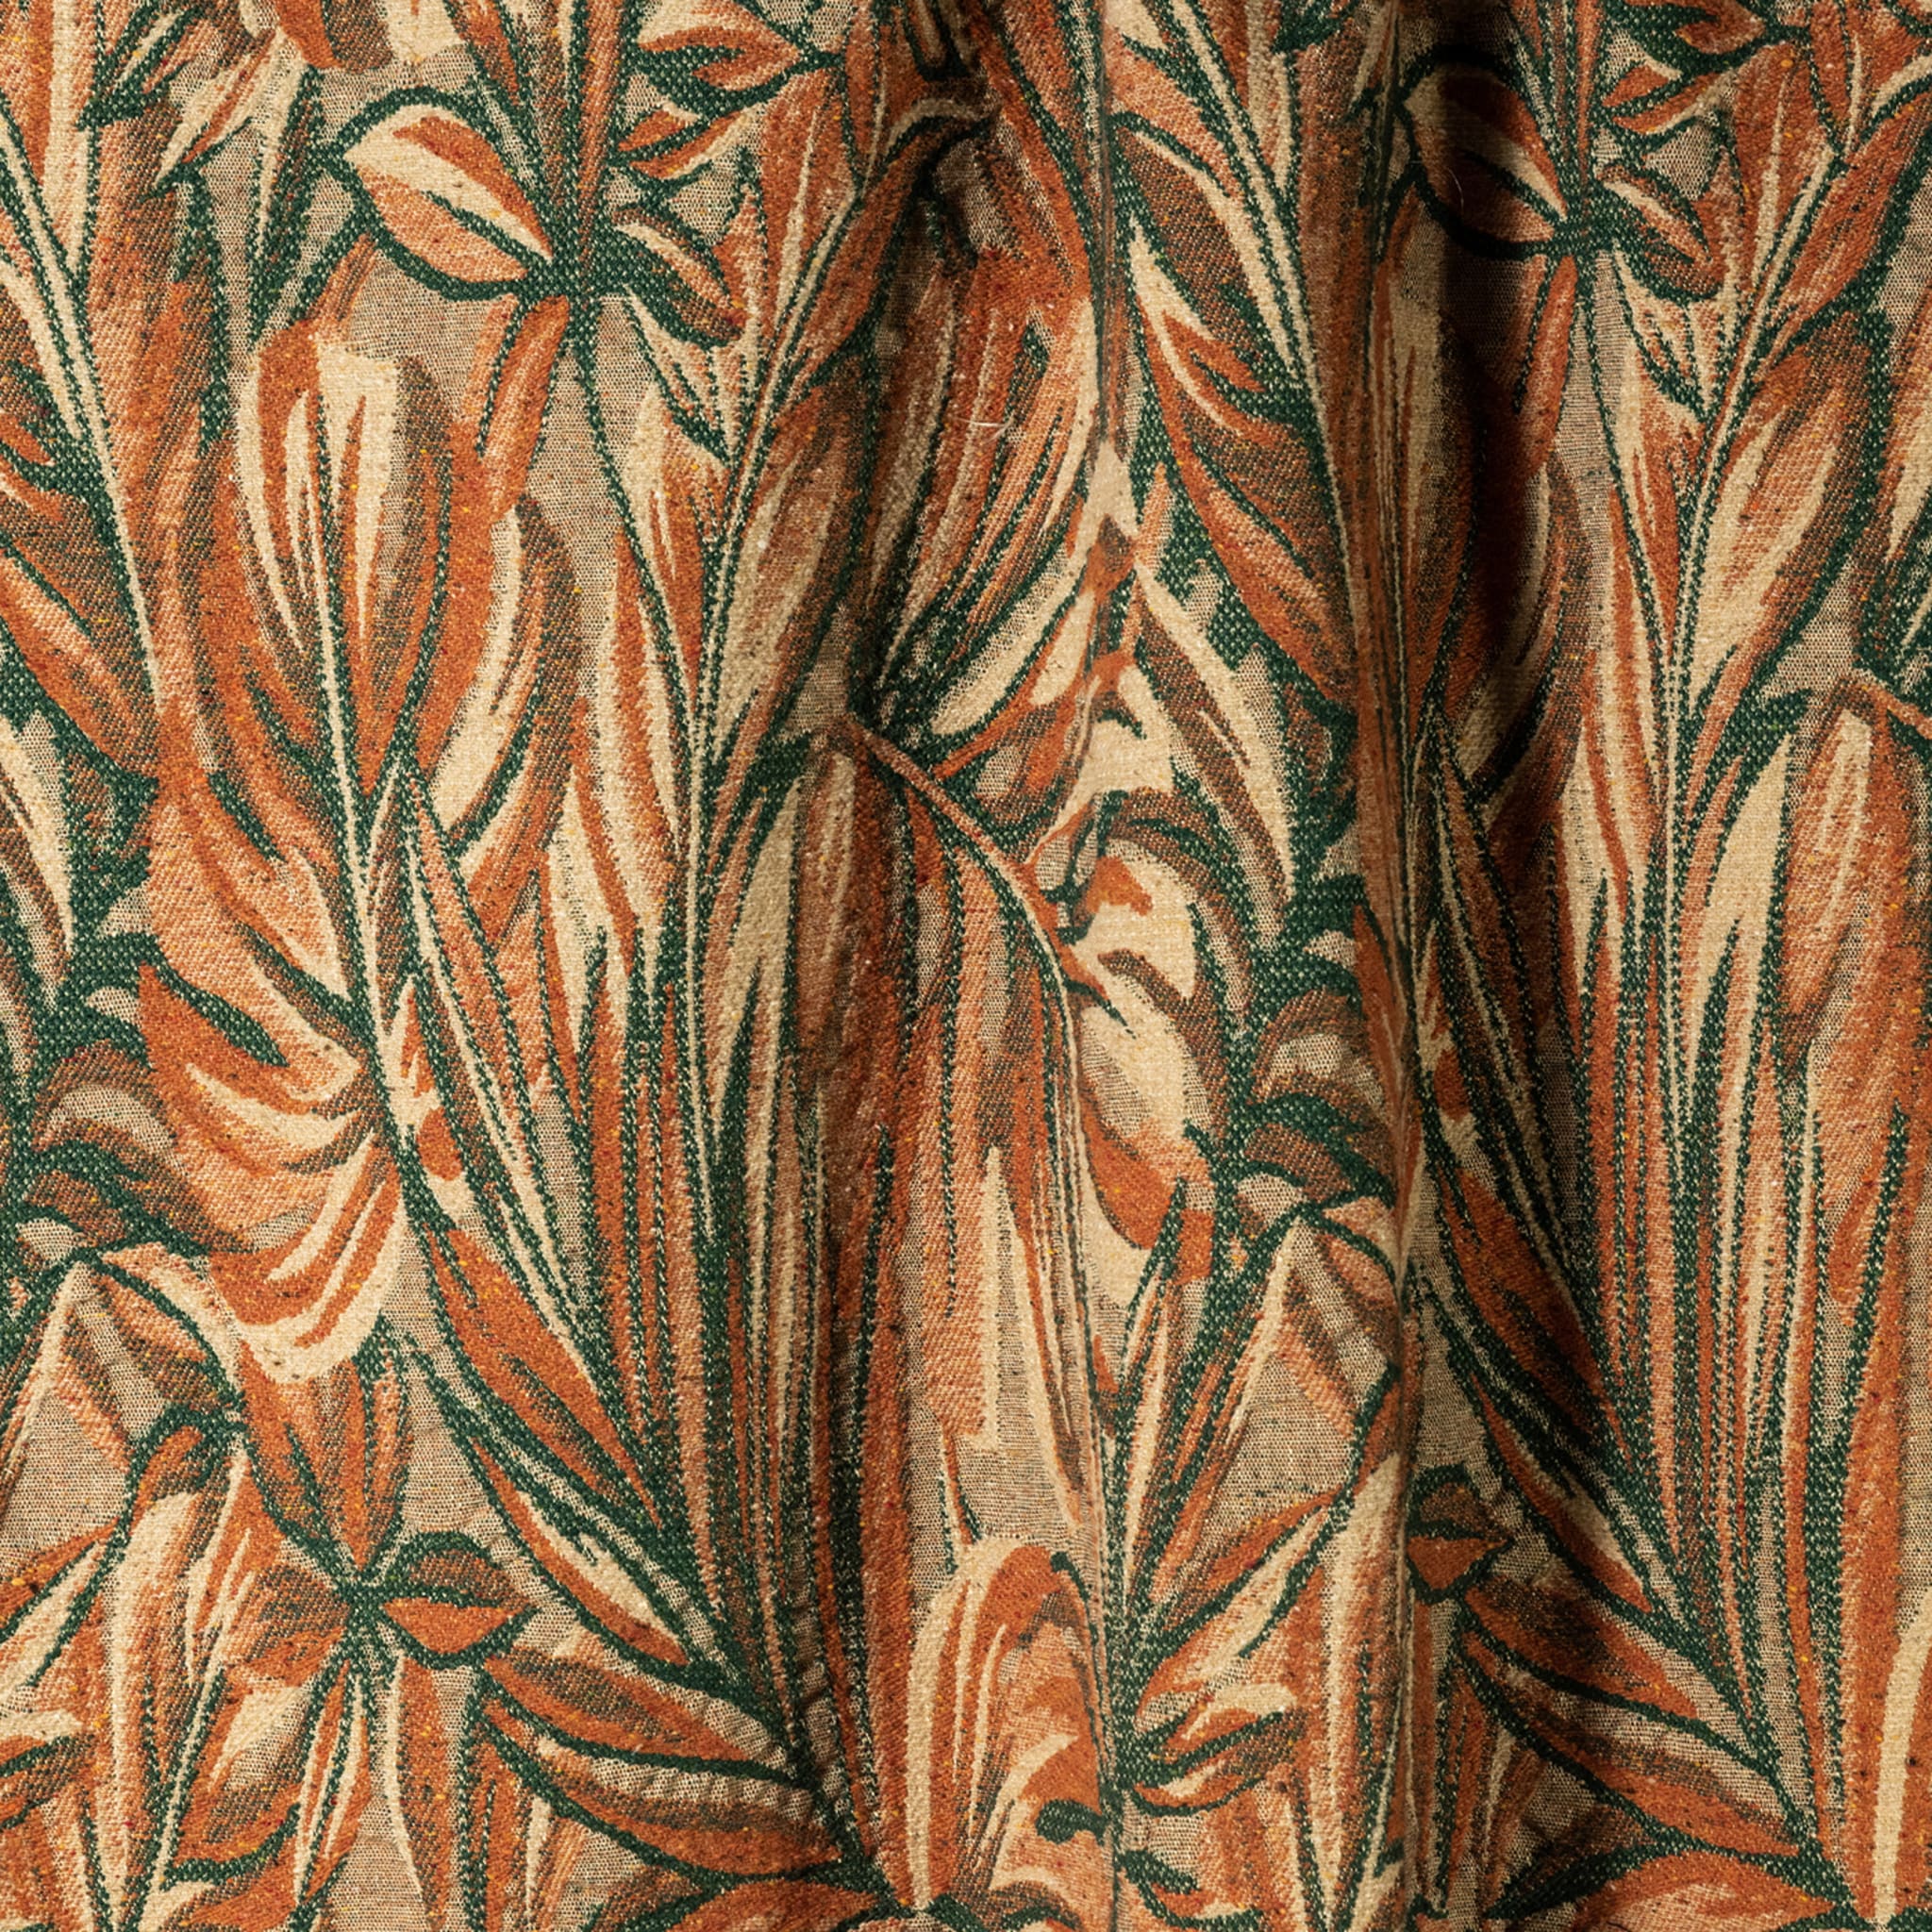 Nequizia Fringed Botanical-Patterned Polychrome Blanket - Alternative view 1